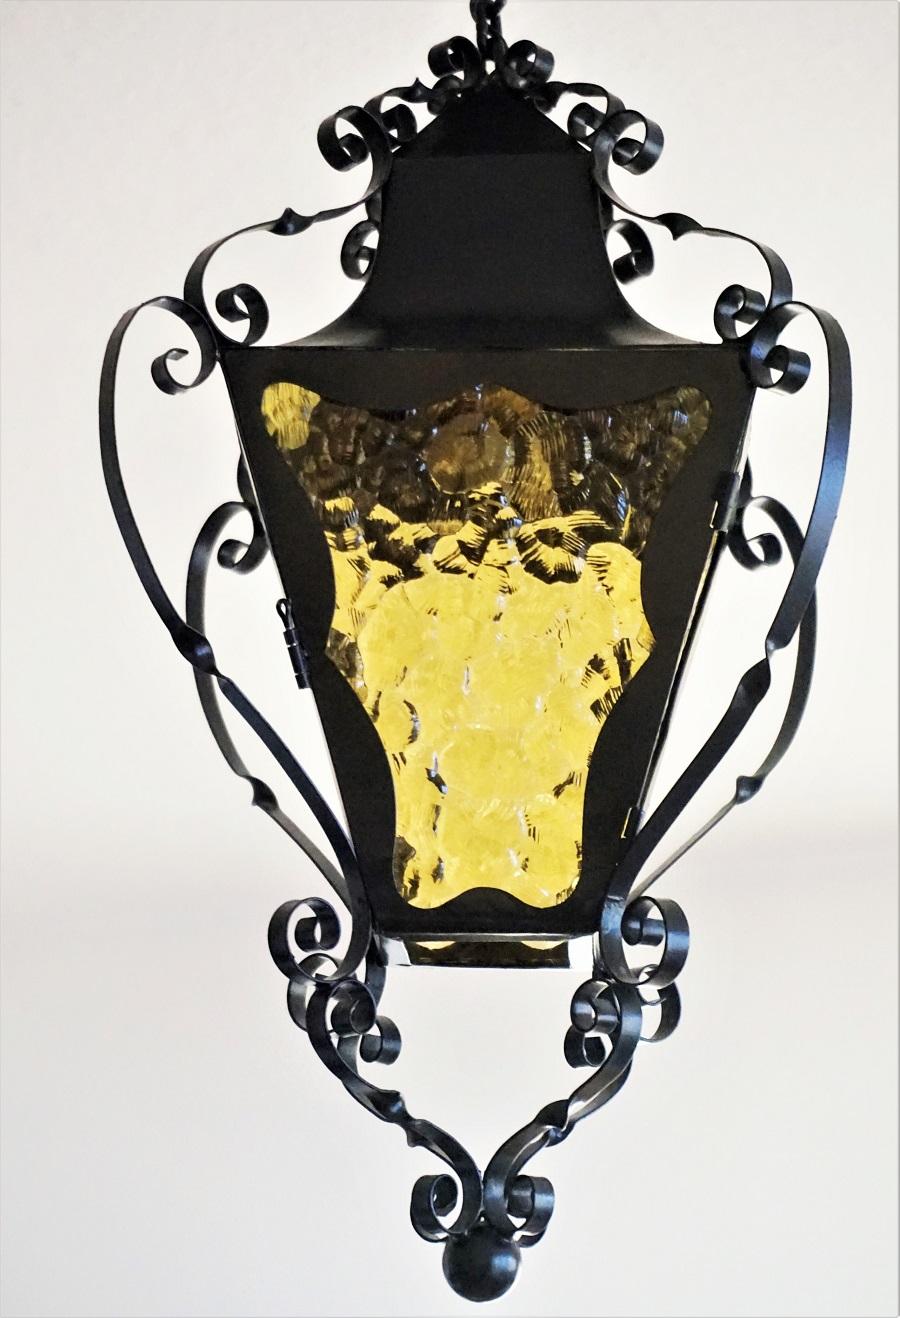 Vierseitige Laterne aus Schmiedeeisen mit gelben Glasscheiben für den Innen- und Außenbereich, Frankreich, 1920-1930. E27-Fassung aus Messing und Porzellan für eine große Glühbirne bis zu 100 Watt. Eine Seite kann als Tür für den Glühbirnenwechsel